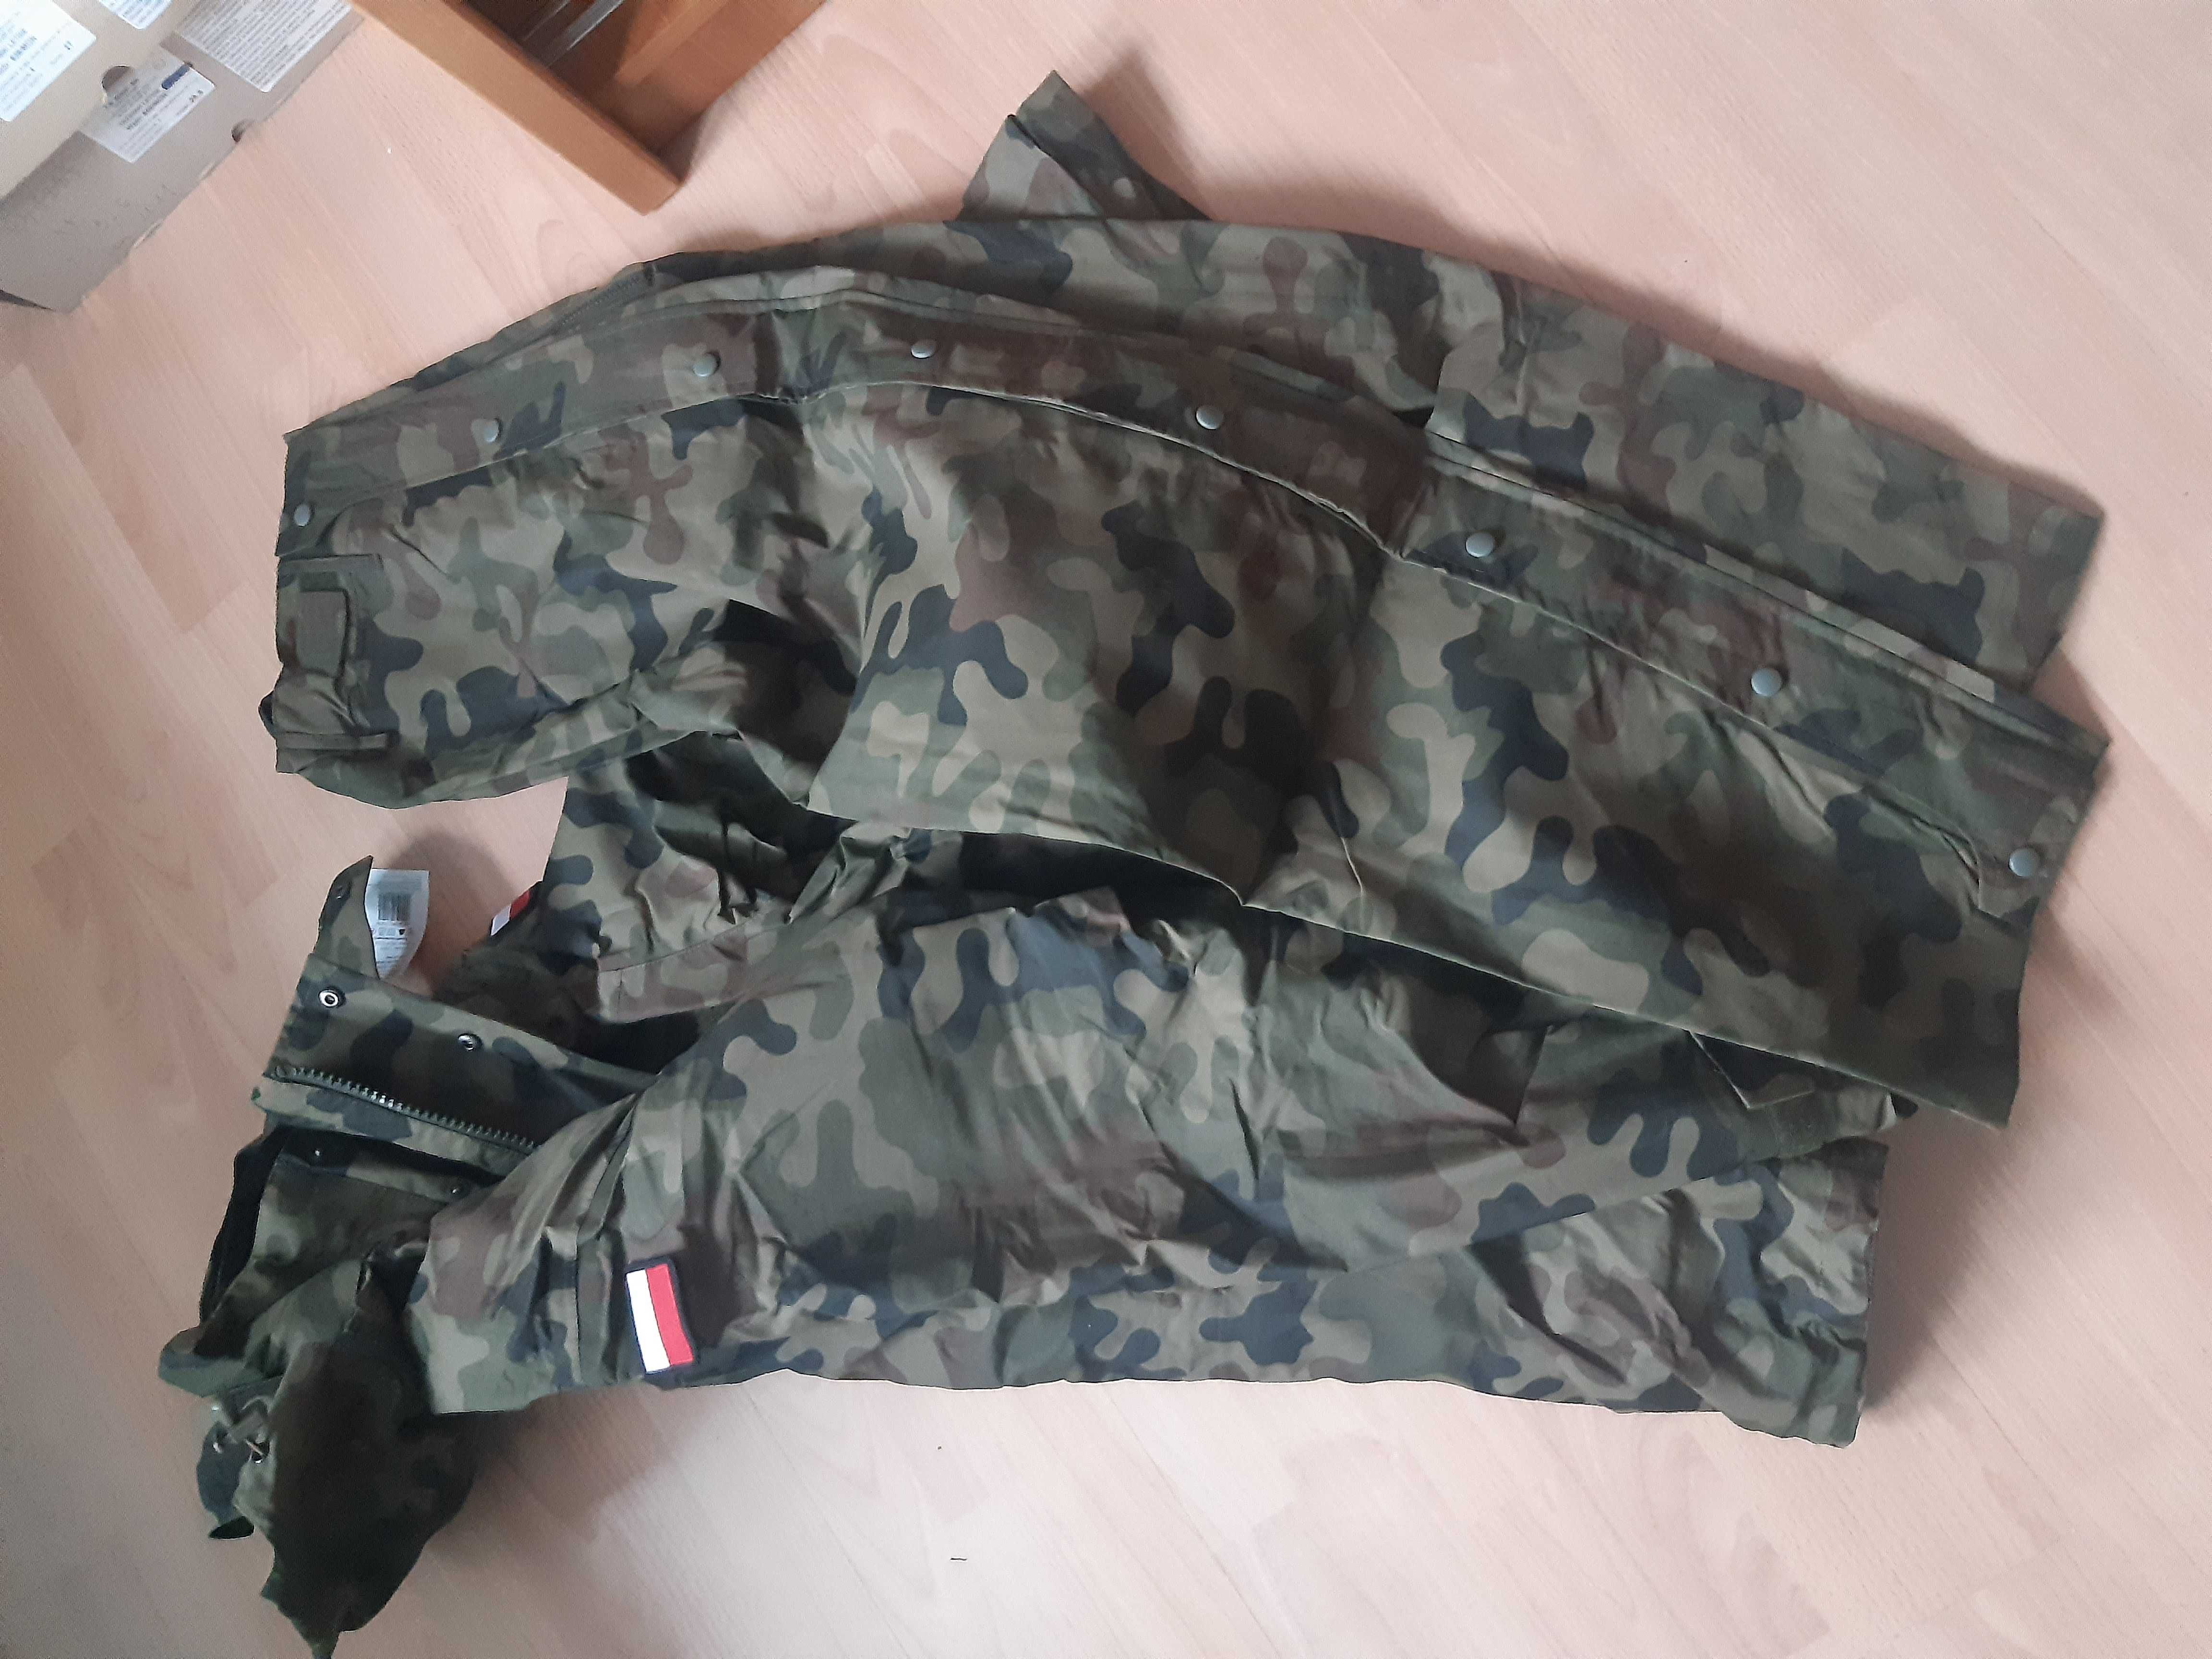 Ubranie ochronne 128mon,goretex roz.M/XL,kurtka wojskowa,polar,spodnie